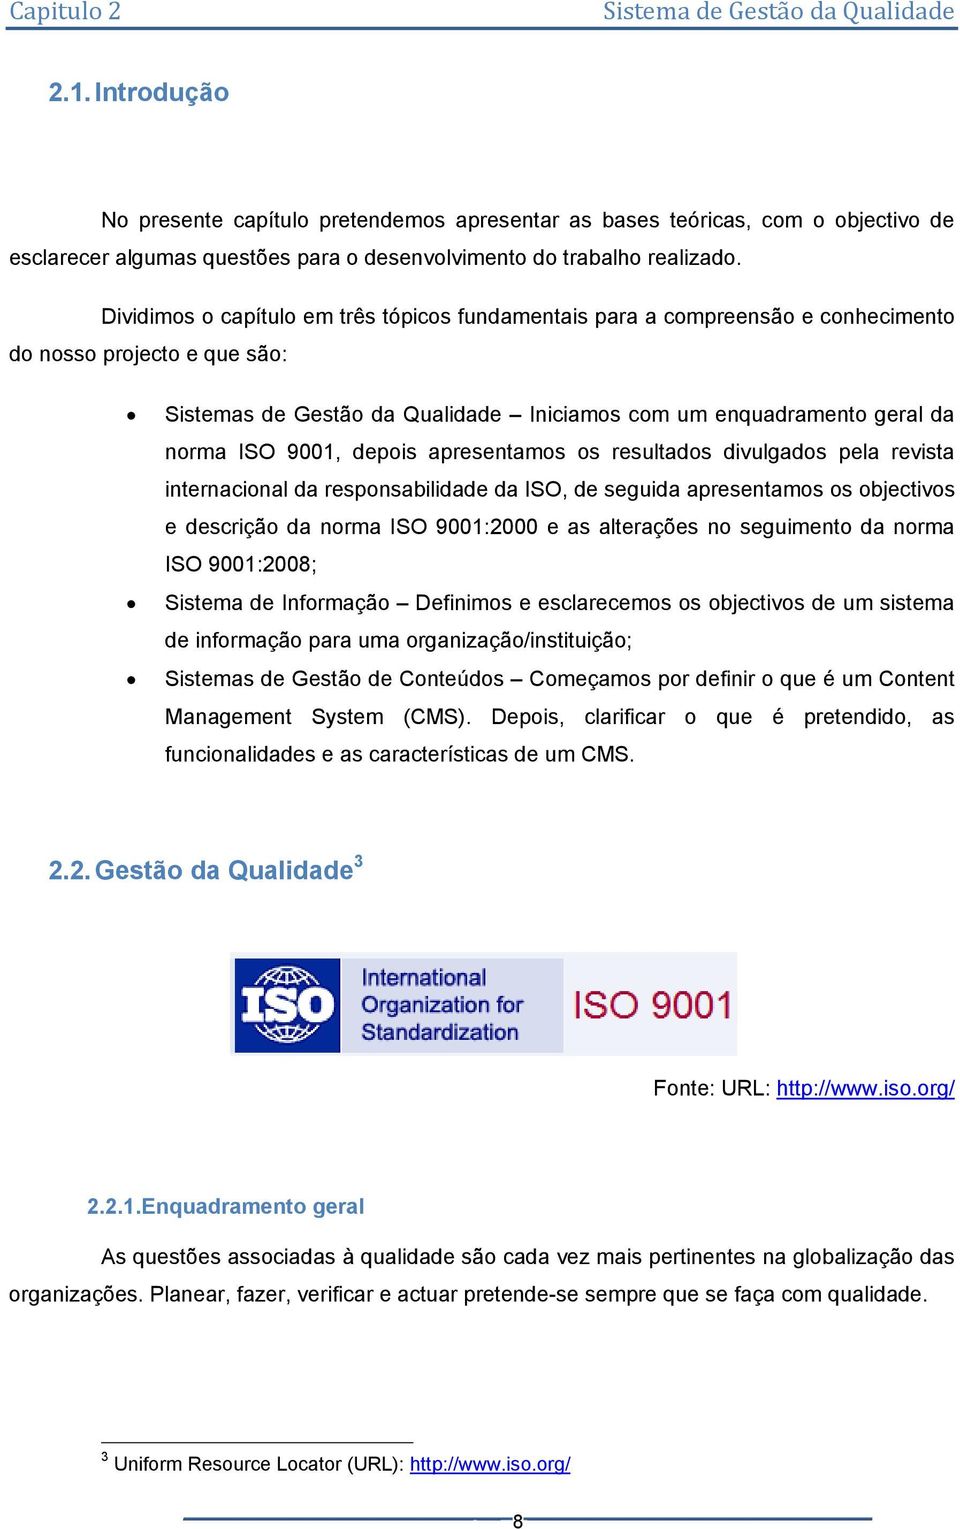 9001, depois apresentamos os resultados divulgados pela revista internacional da responsabilidade da ISO, de seguida apresentamos os objectivos e descrição da norma ISO 9001:2000 e as alterações no